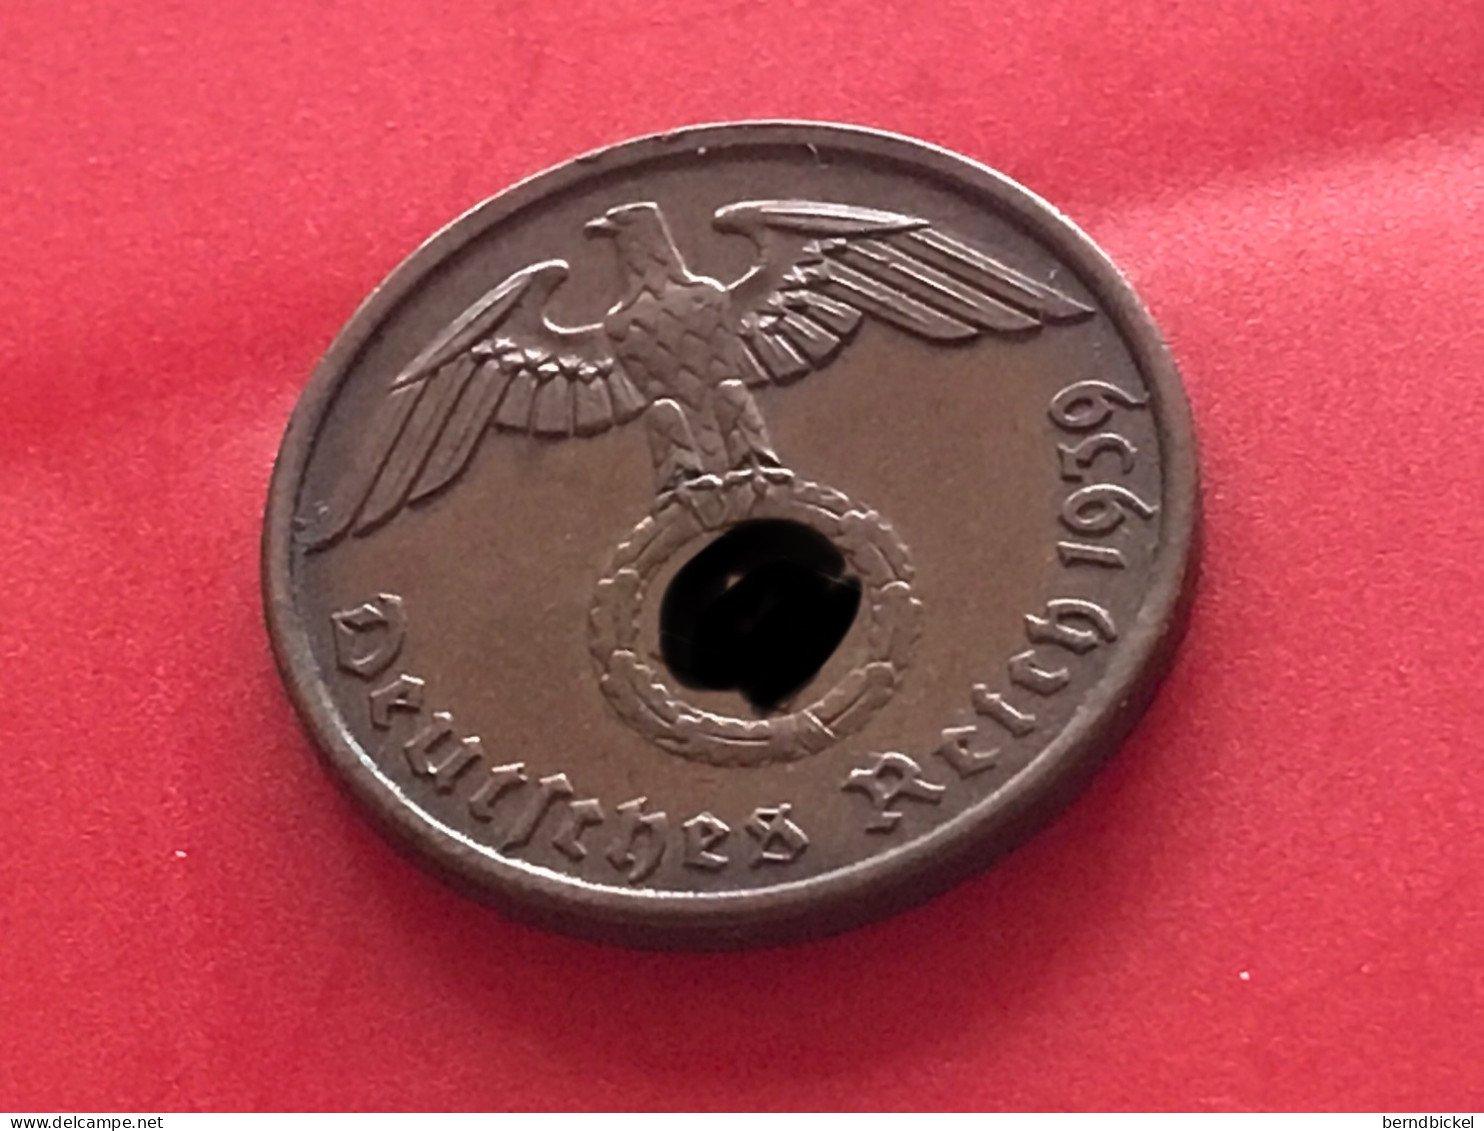 Münze Münzen Umlaufmünze Deutschland Deutsches Reich 2 Pfennig 1939 Münzzeichen A - 2 Reichspfennig